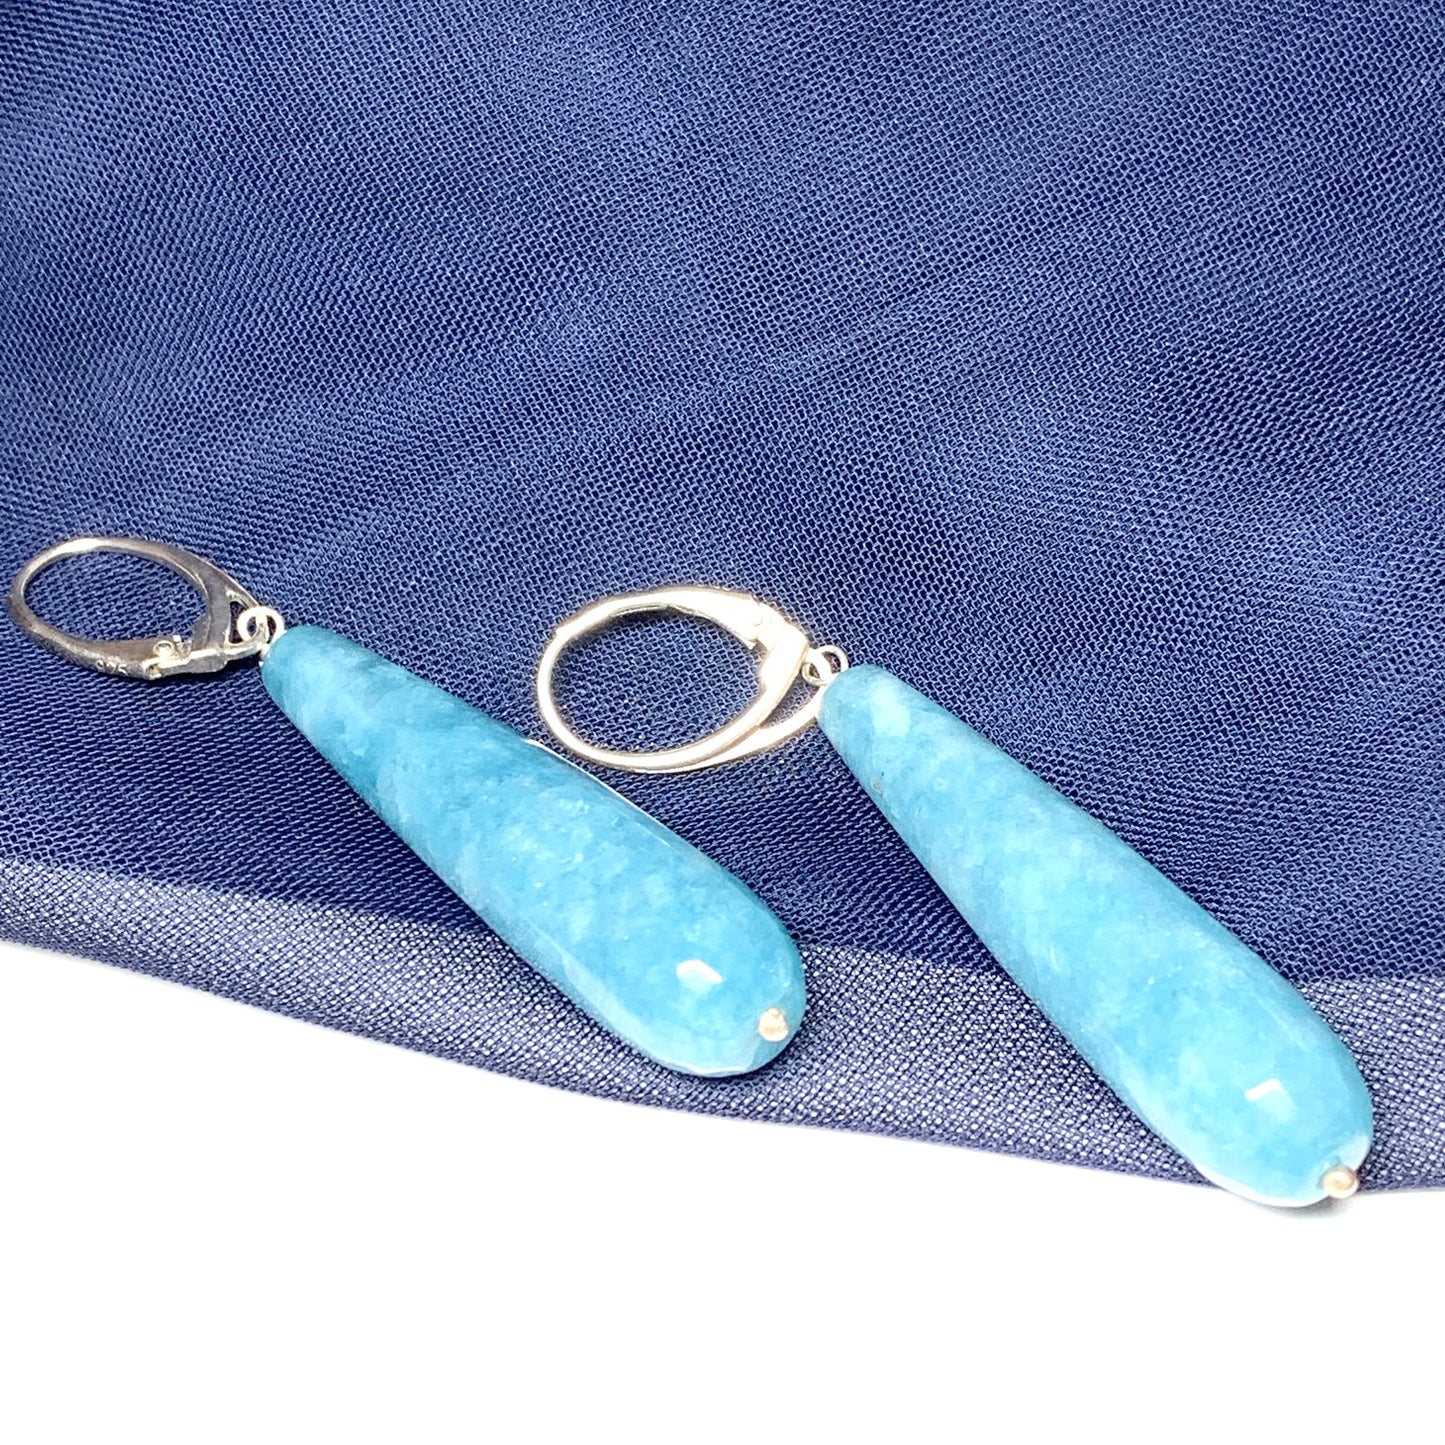 Light blue agate long teardrop shaped drop earrings